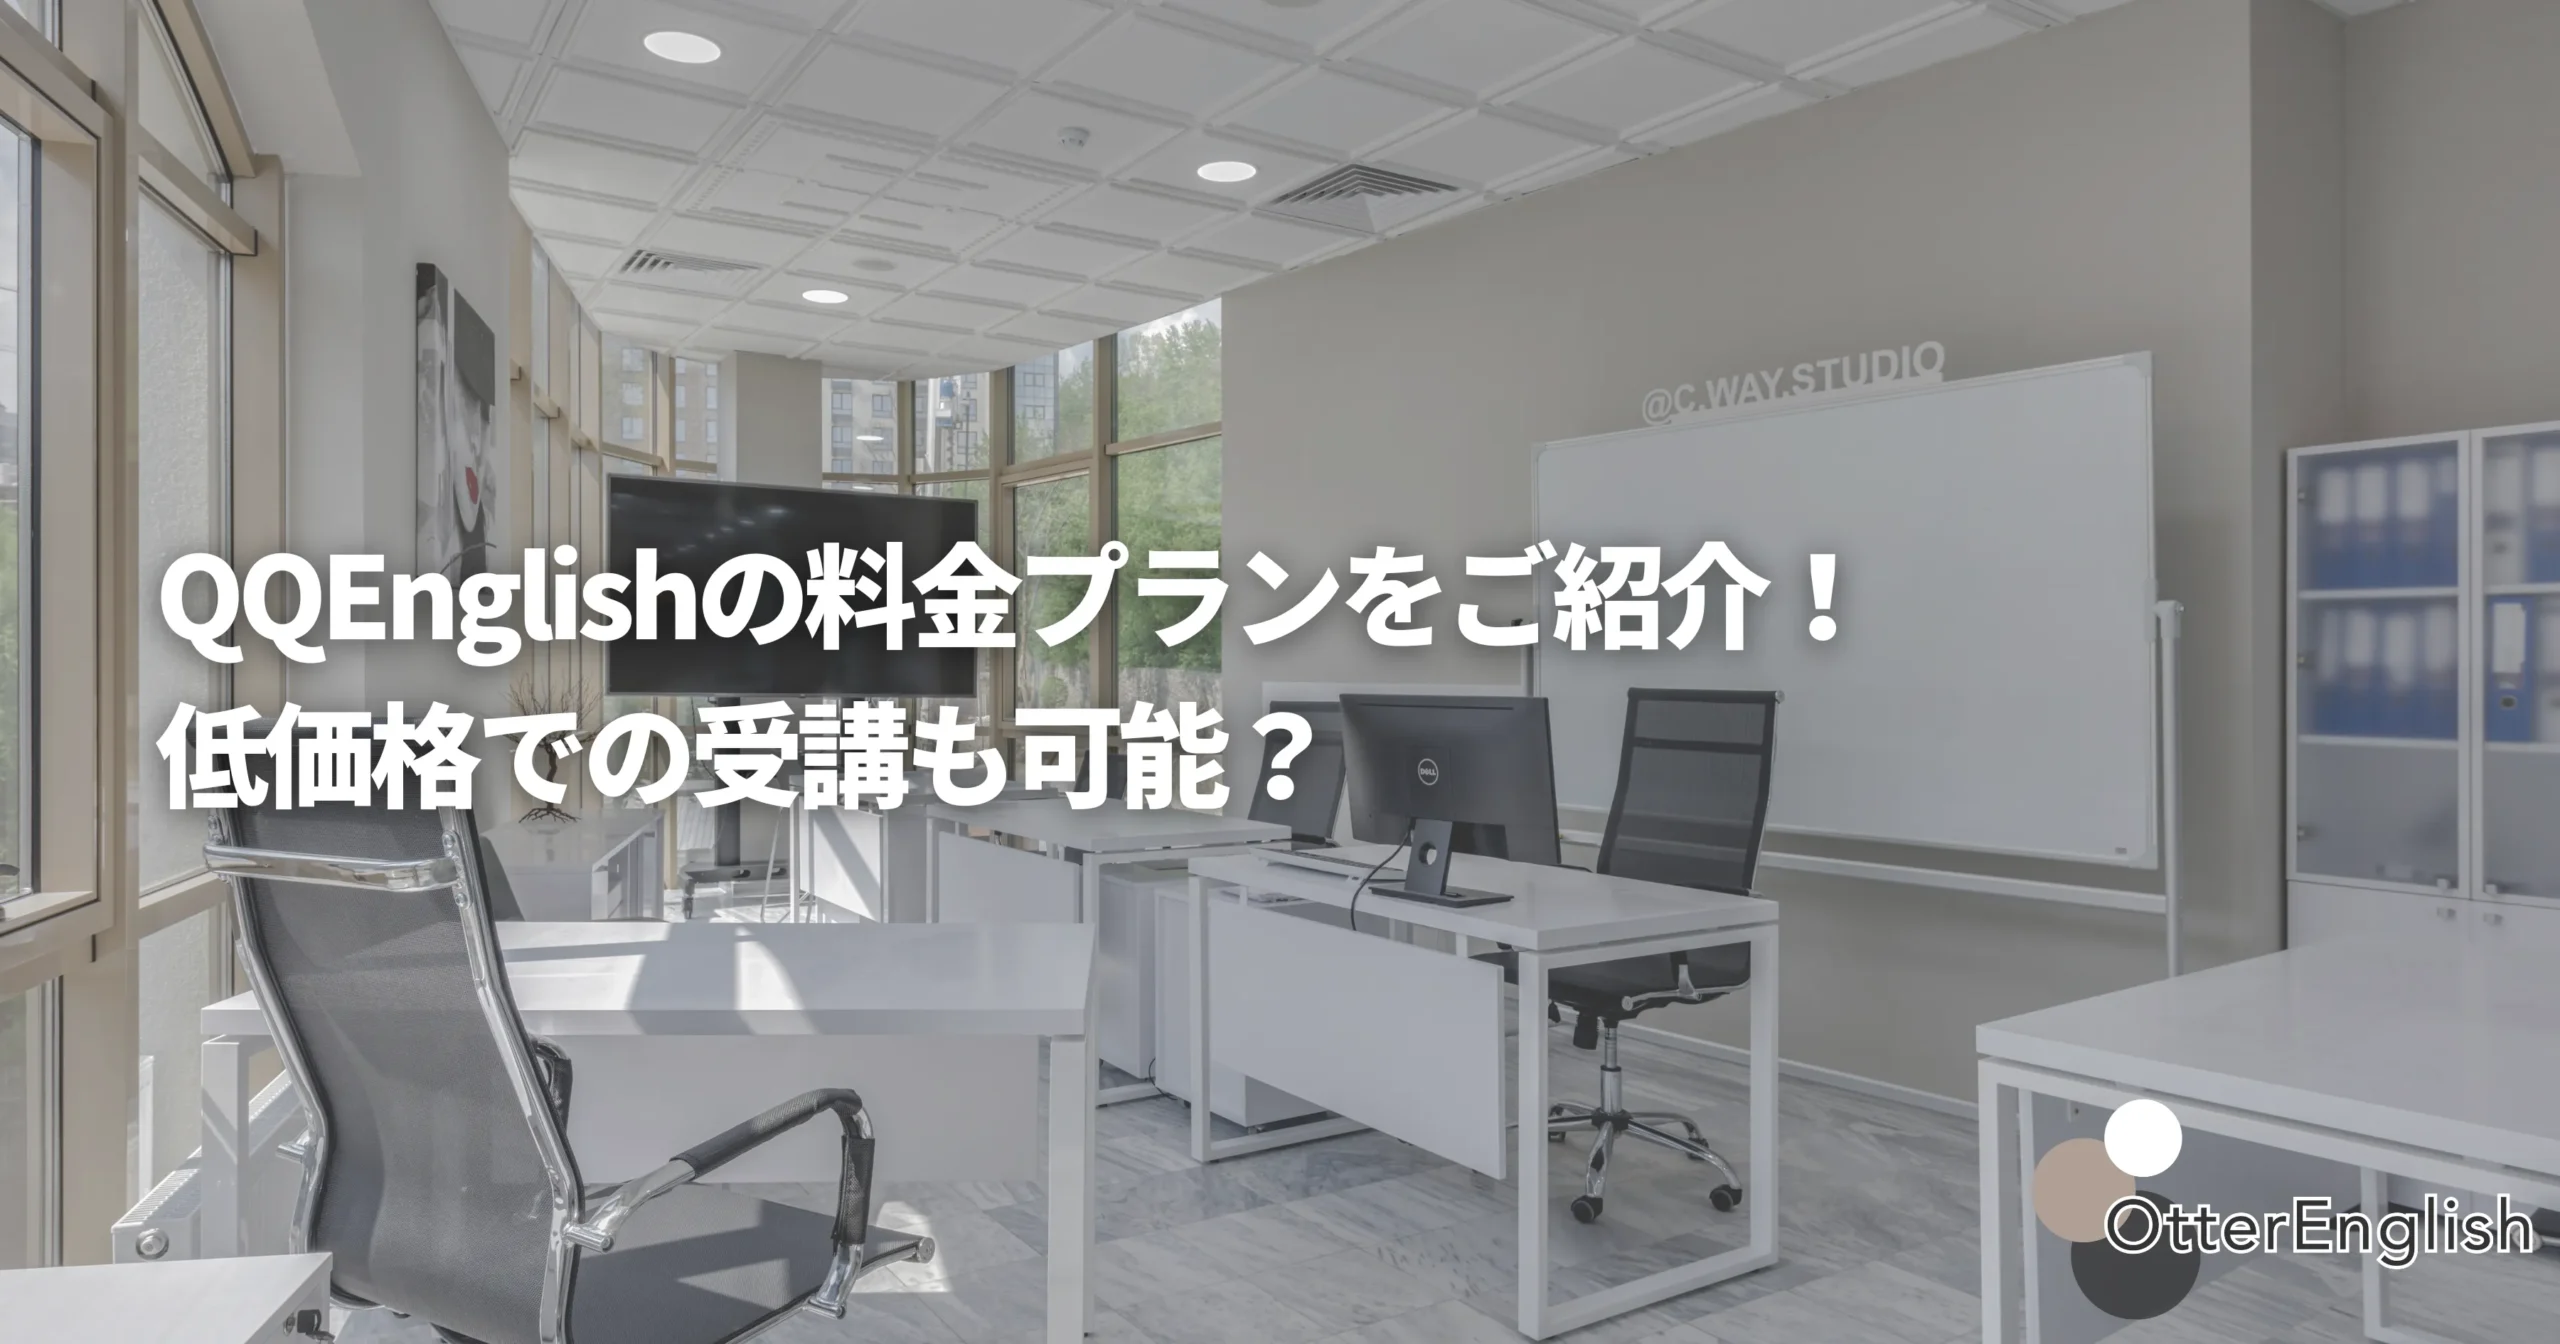 QQEnglishのオフィスをイメージした画像